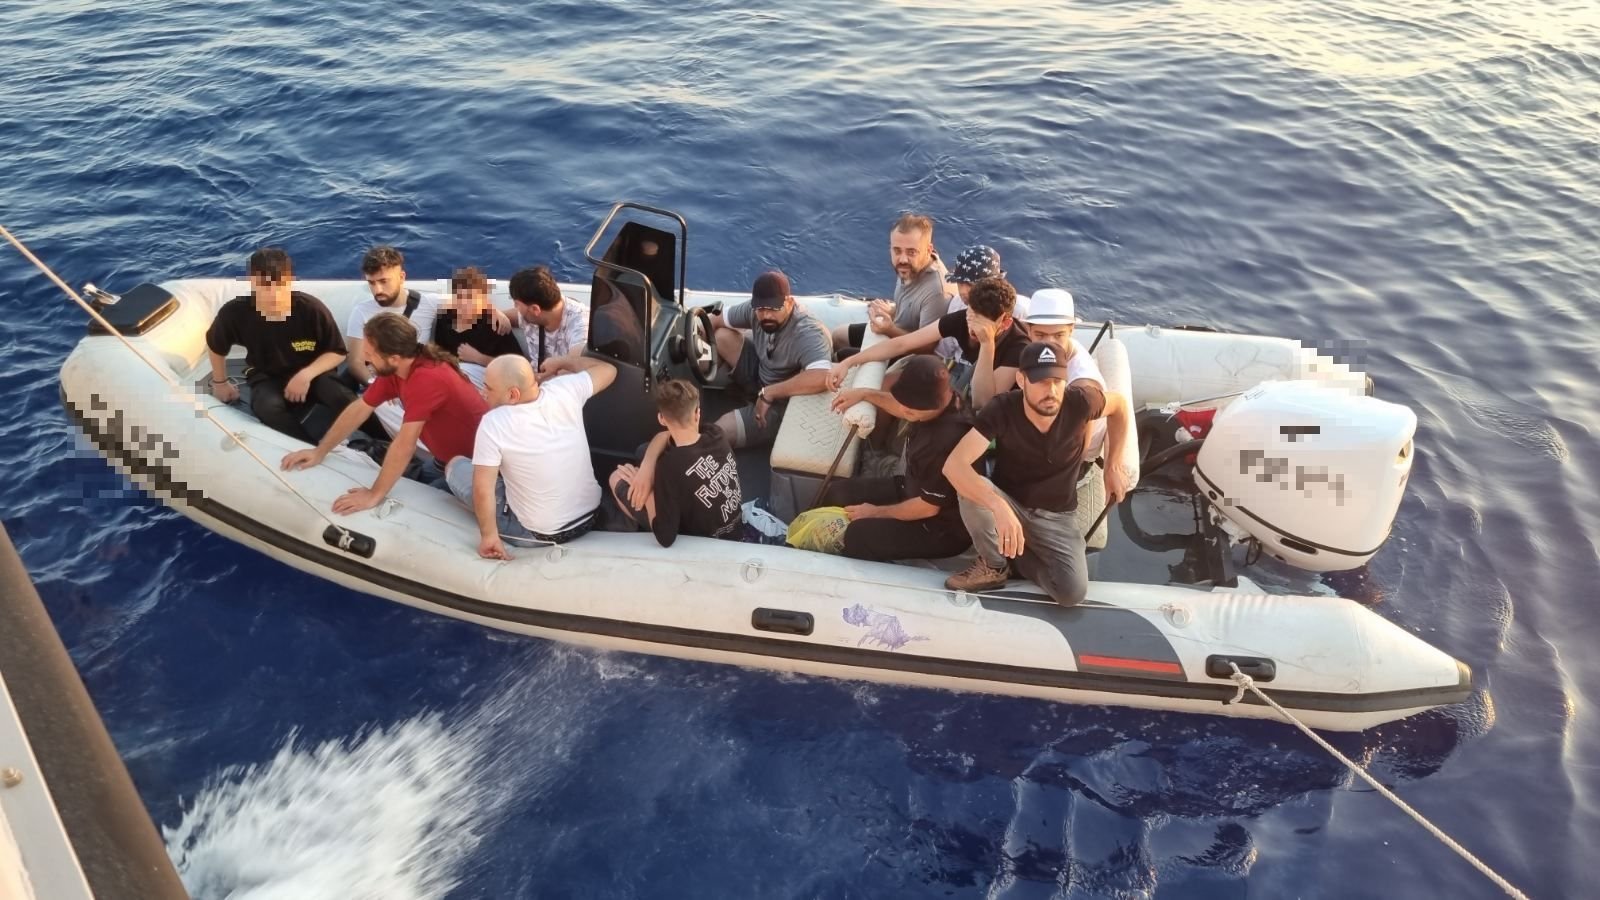 Ρόδος: Εντοπισμός και διάσωση 34 μεταναστών και σύλληψη μετά από καταδίωξη των διακινητών τους